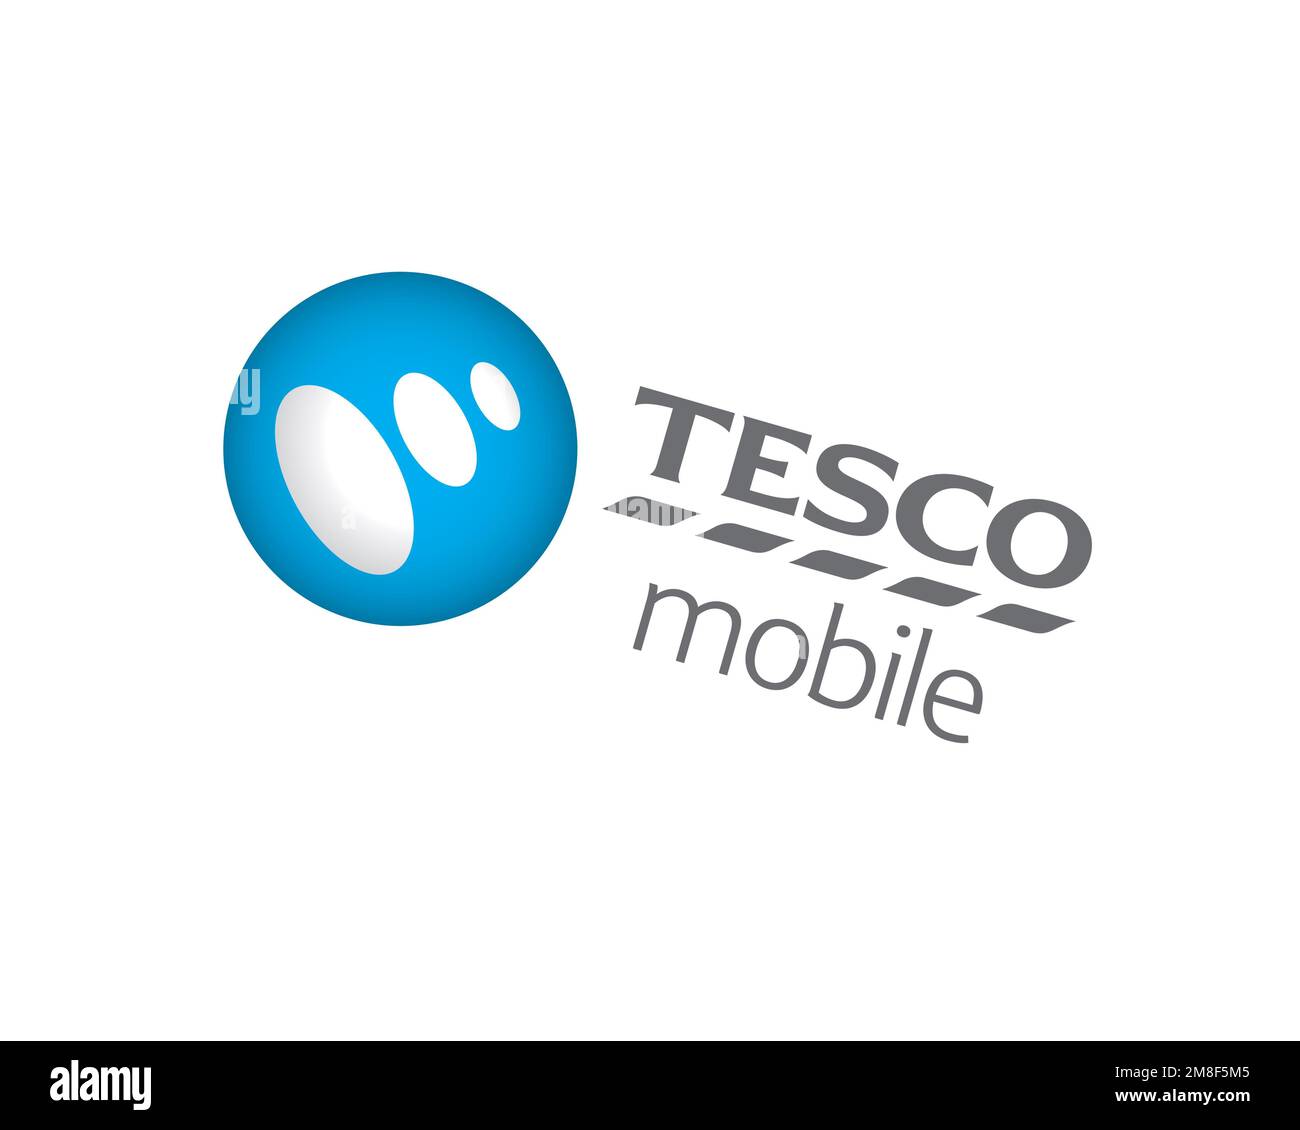 Tesco Mobile, rotated logo, white background B Stock Photo